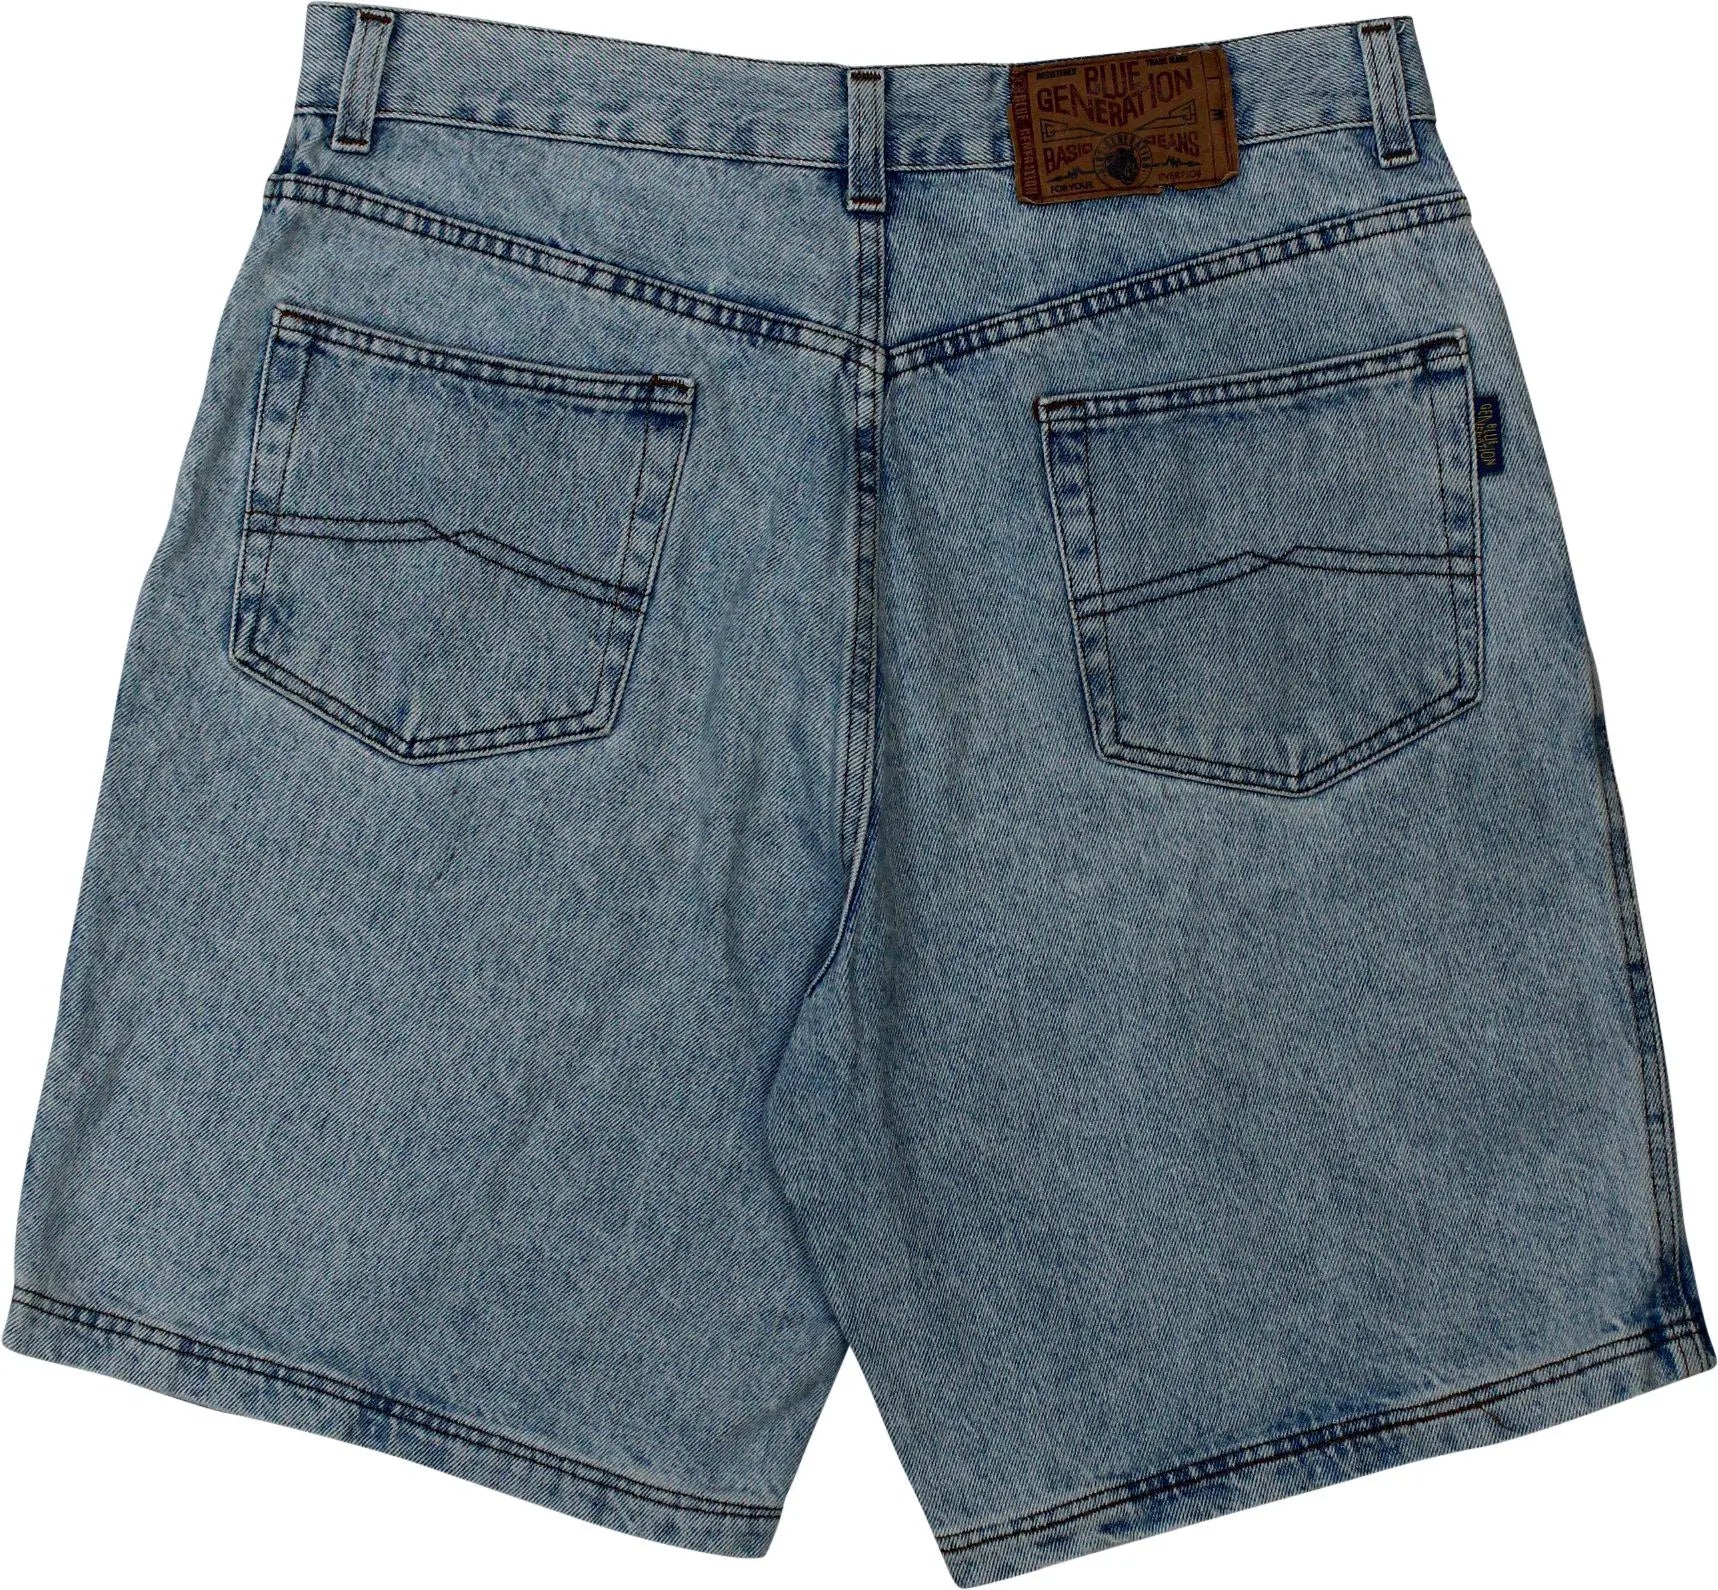 Blue Generation - Vintage Denim Shorts- ThriftTale.com - Vintage and second handclothing